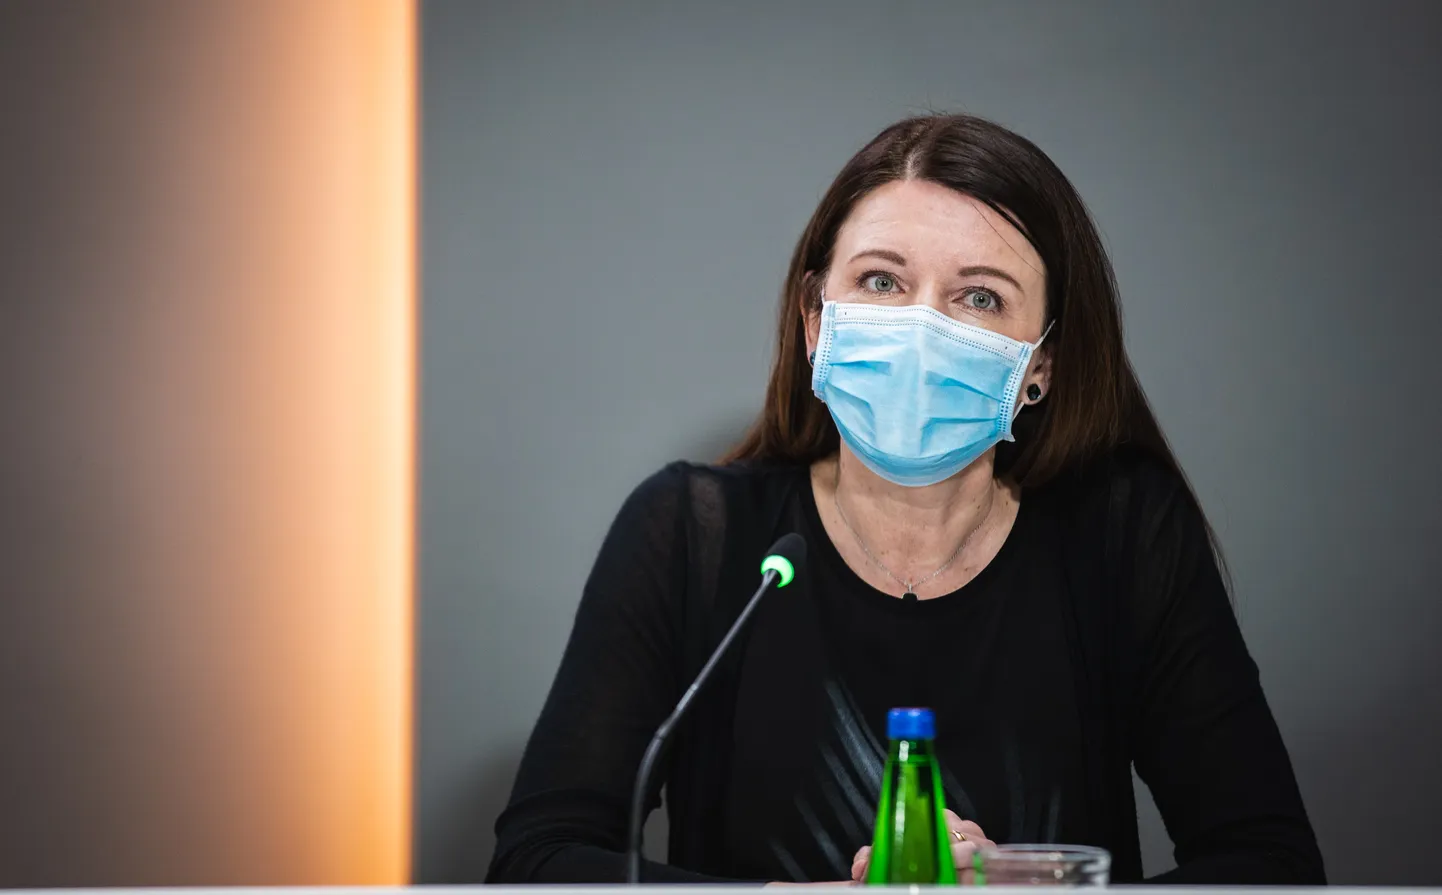 Tallinna linnavalitsuse epidemioloogiliste ennetusmeetmete väljatöötamise ja nende rakendamise koordinaator Ester Öpik.